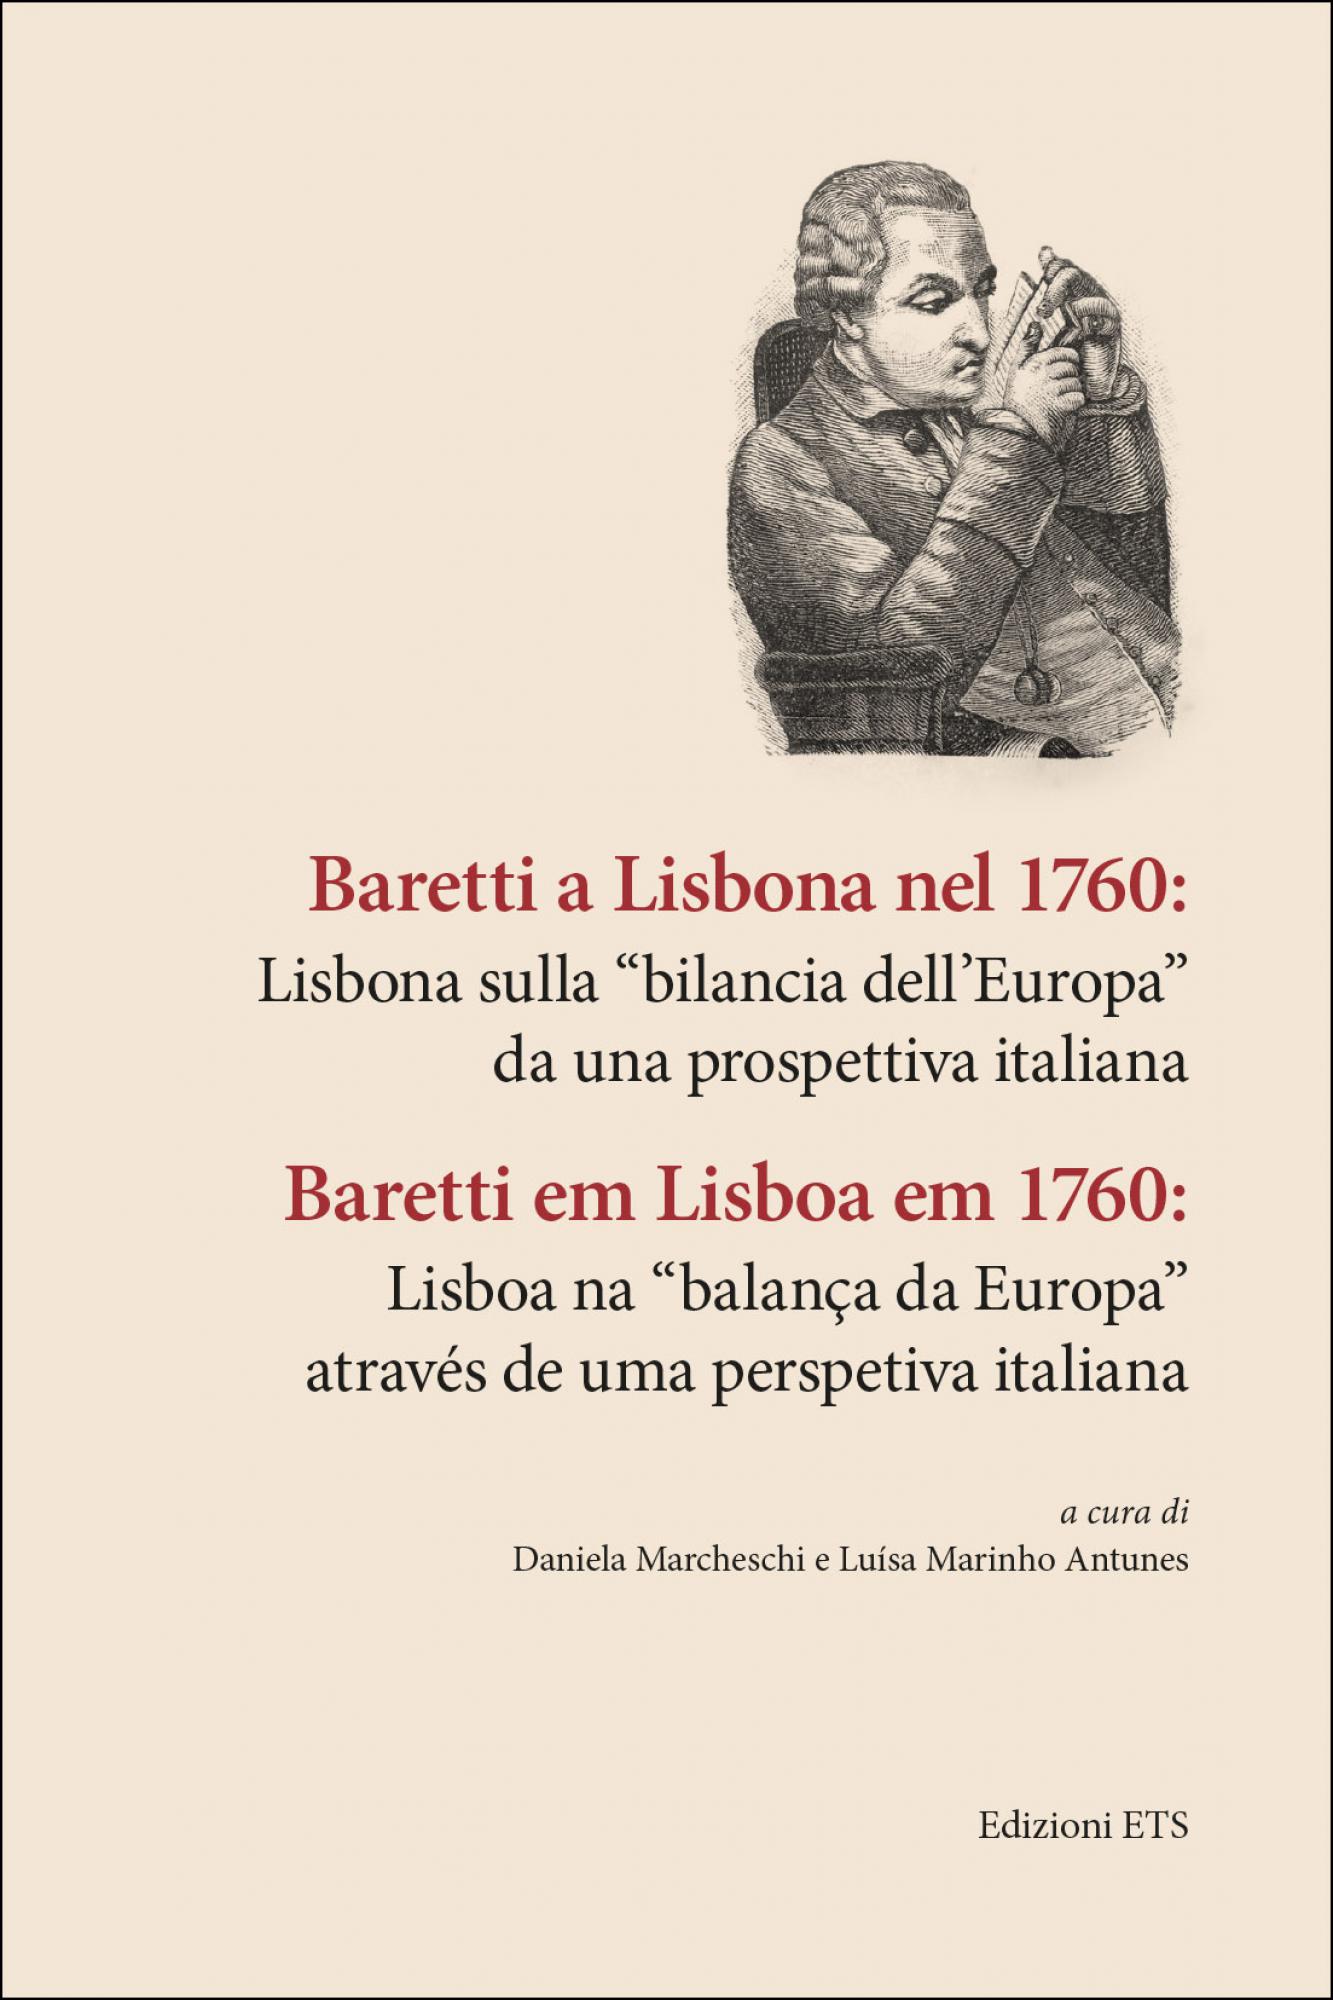 Baretti a Lisbona nel 1760.Lisbona sulla “bilancia dell’Europa” da una prospettiva italiana